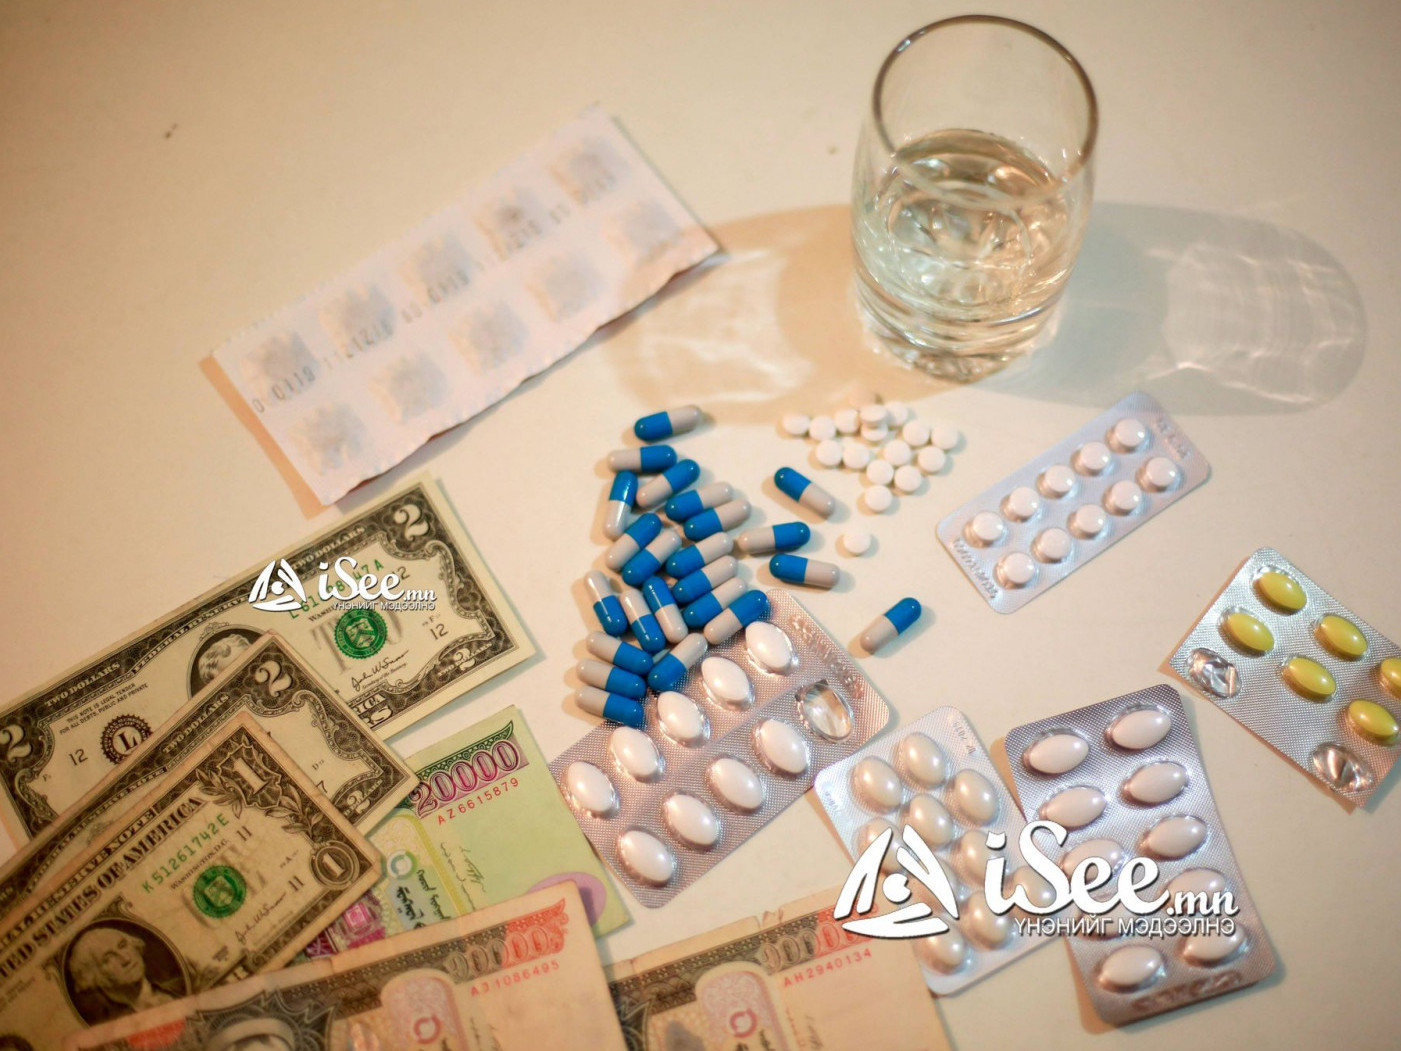 Хөнгөлөлттэй эмийн жагсаалтад 33 нэршлийн эм нэмэгджээ | iSee.mn